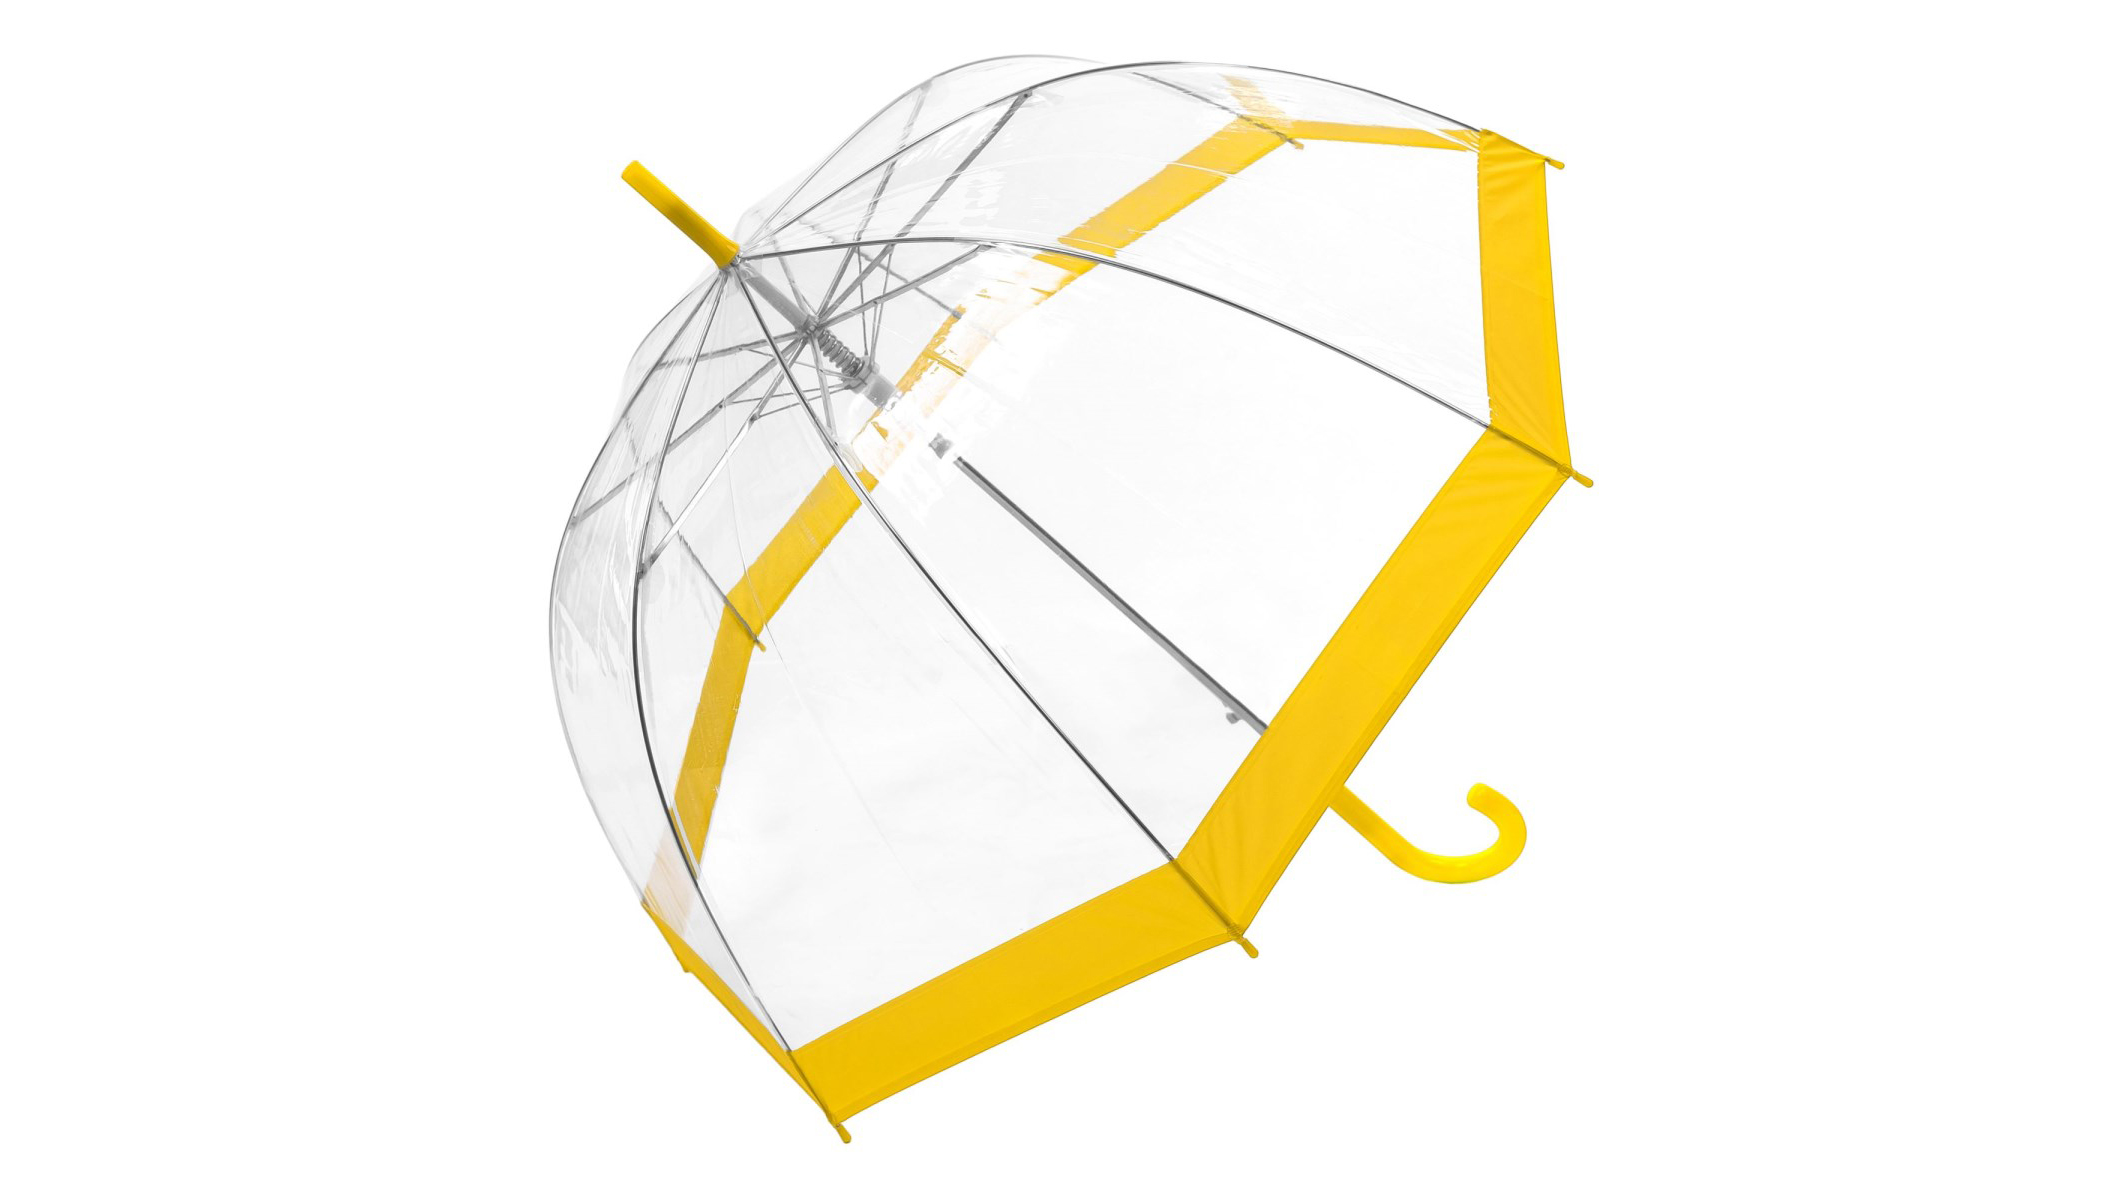 transparent with trim umbrella black trim wholesale